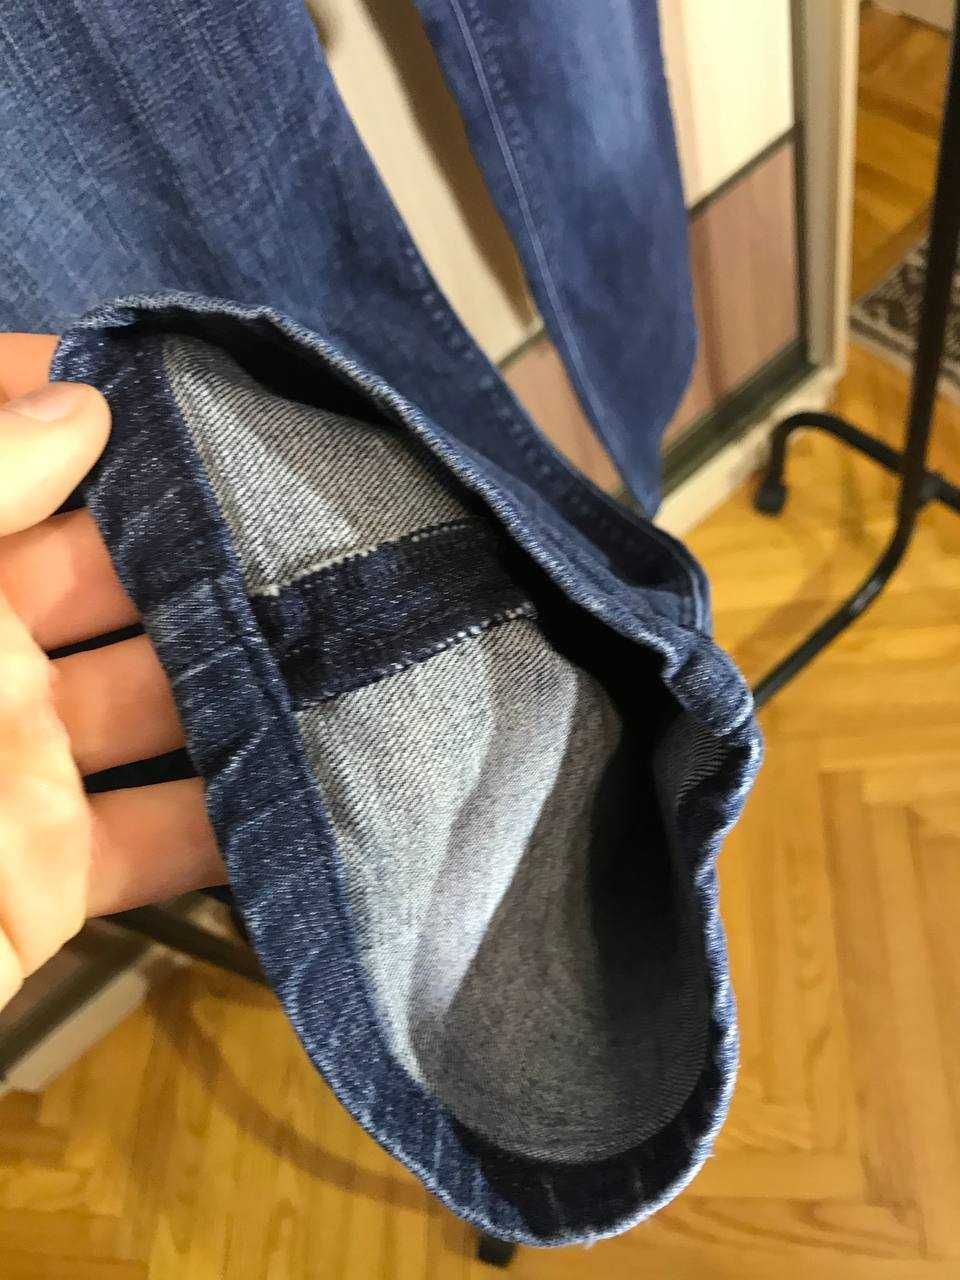 Мужские джинсы штаны HUGO BOSS Size 36/30 оригинал